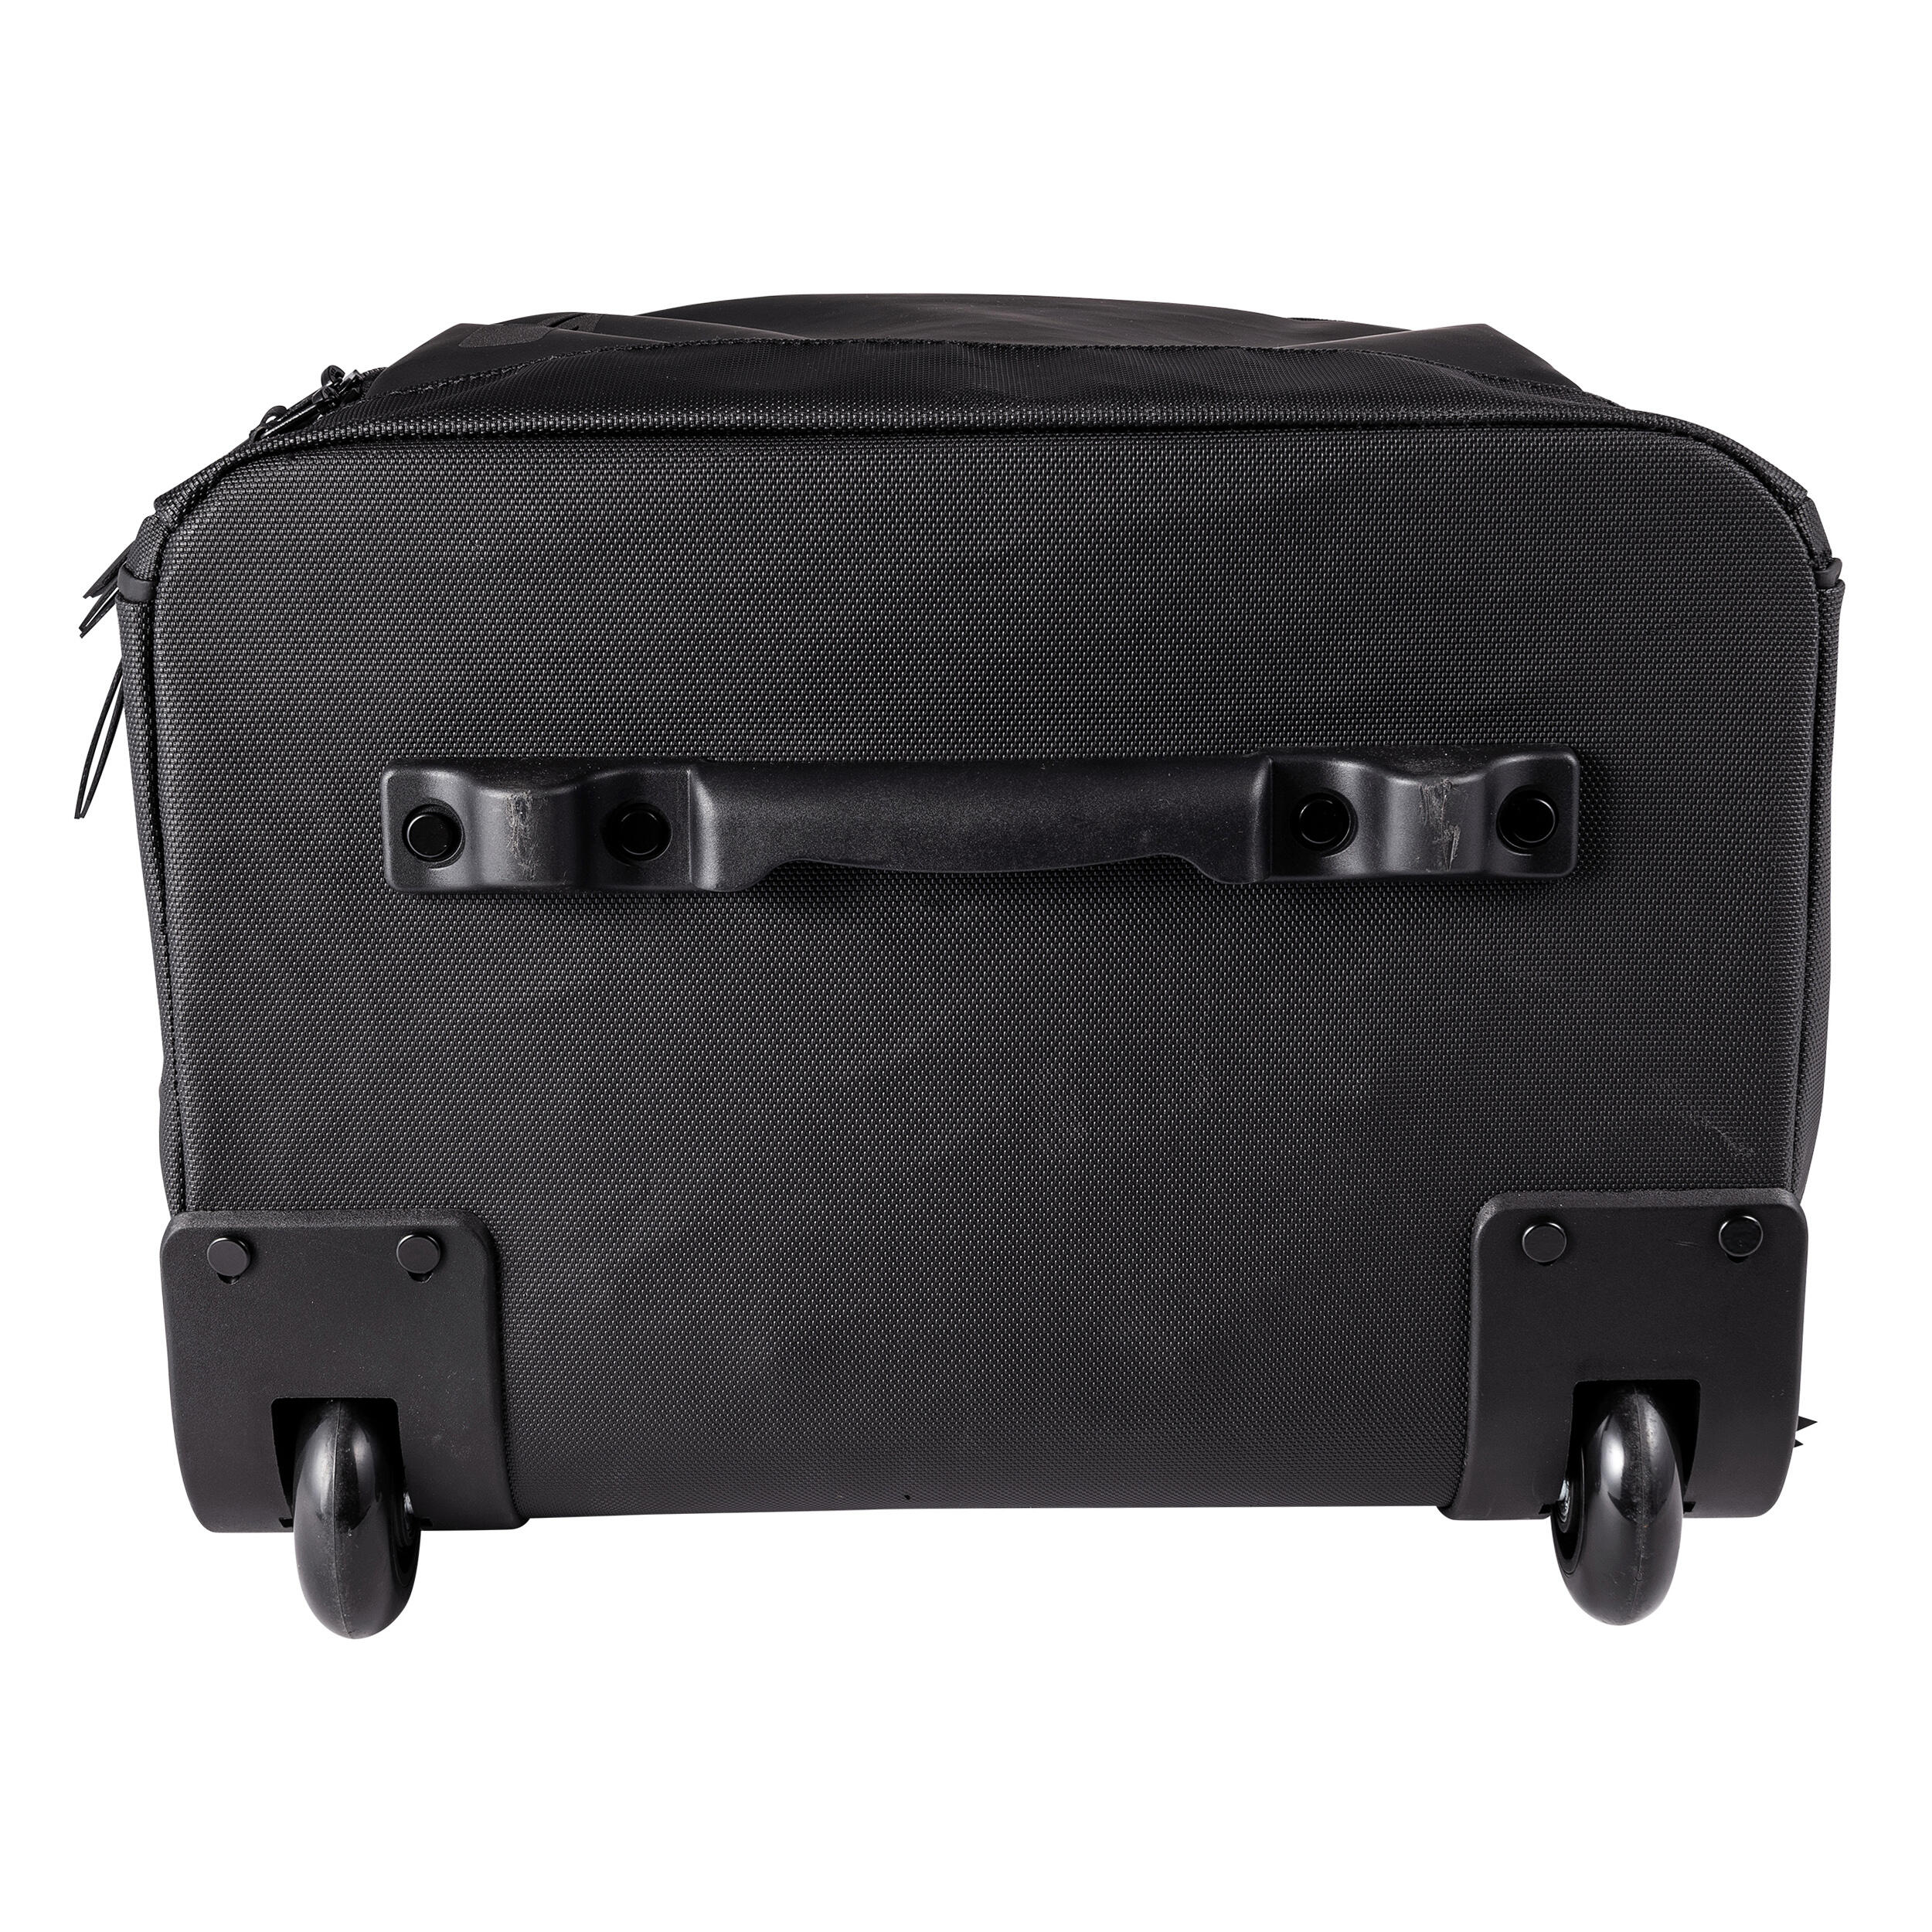 Trolley Bag FH900 - Black 17/18